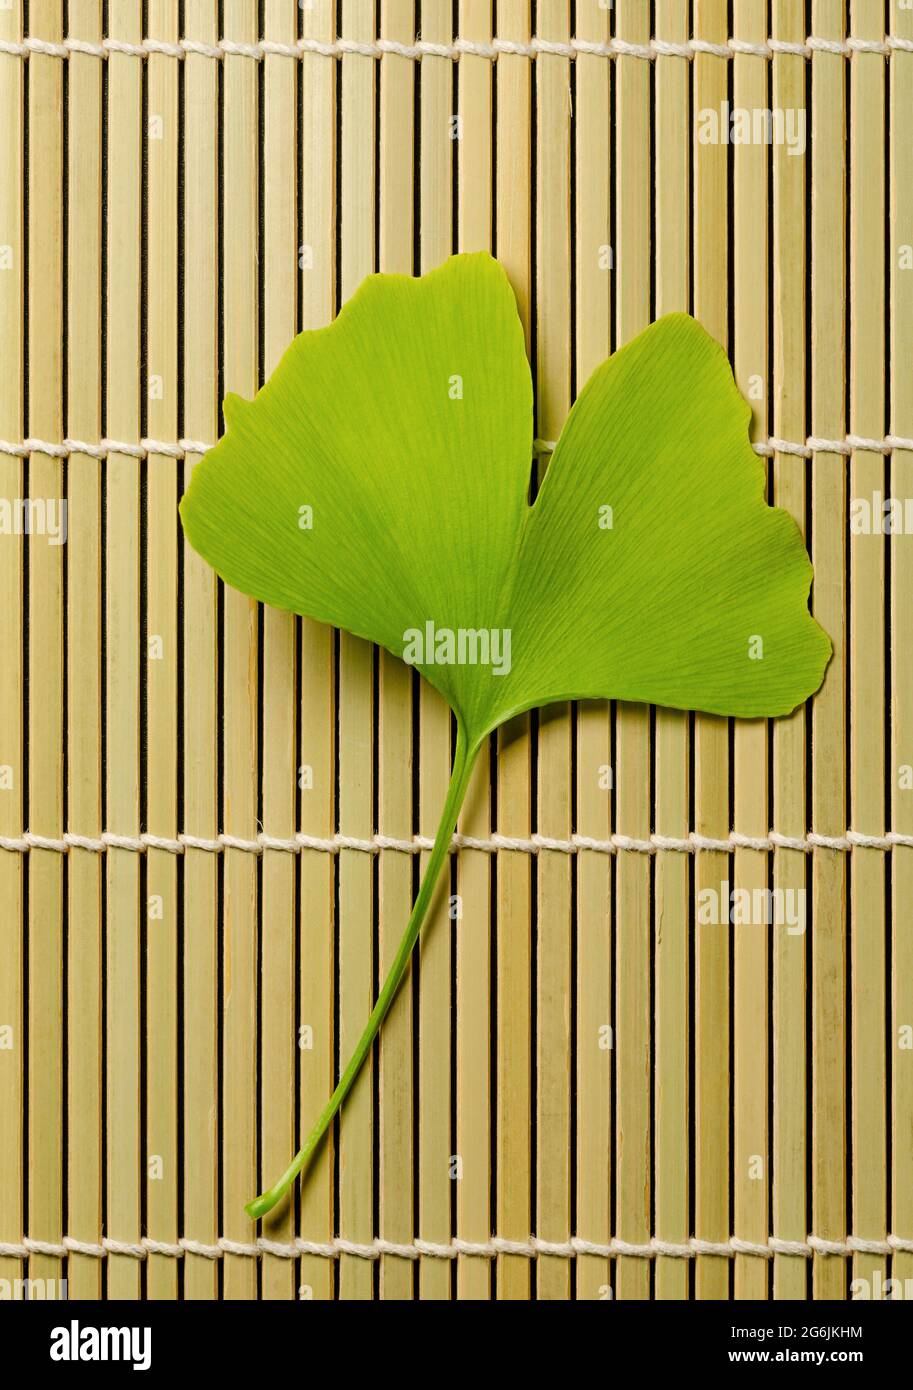 Singola foglia di ginkgo su un tappeto di bambù. Ginkgo biloba, conosciuto anche come gingko o albero dei maidenhair, albero ufficiale della capitale giapponese Tokyo. Foto Stock